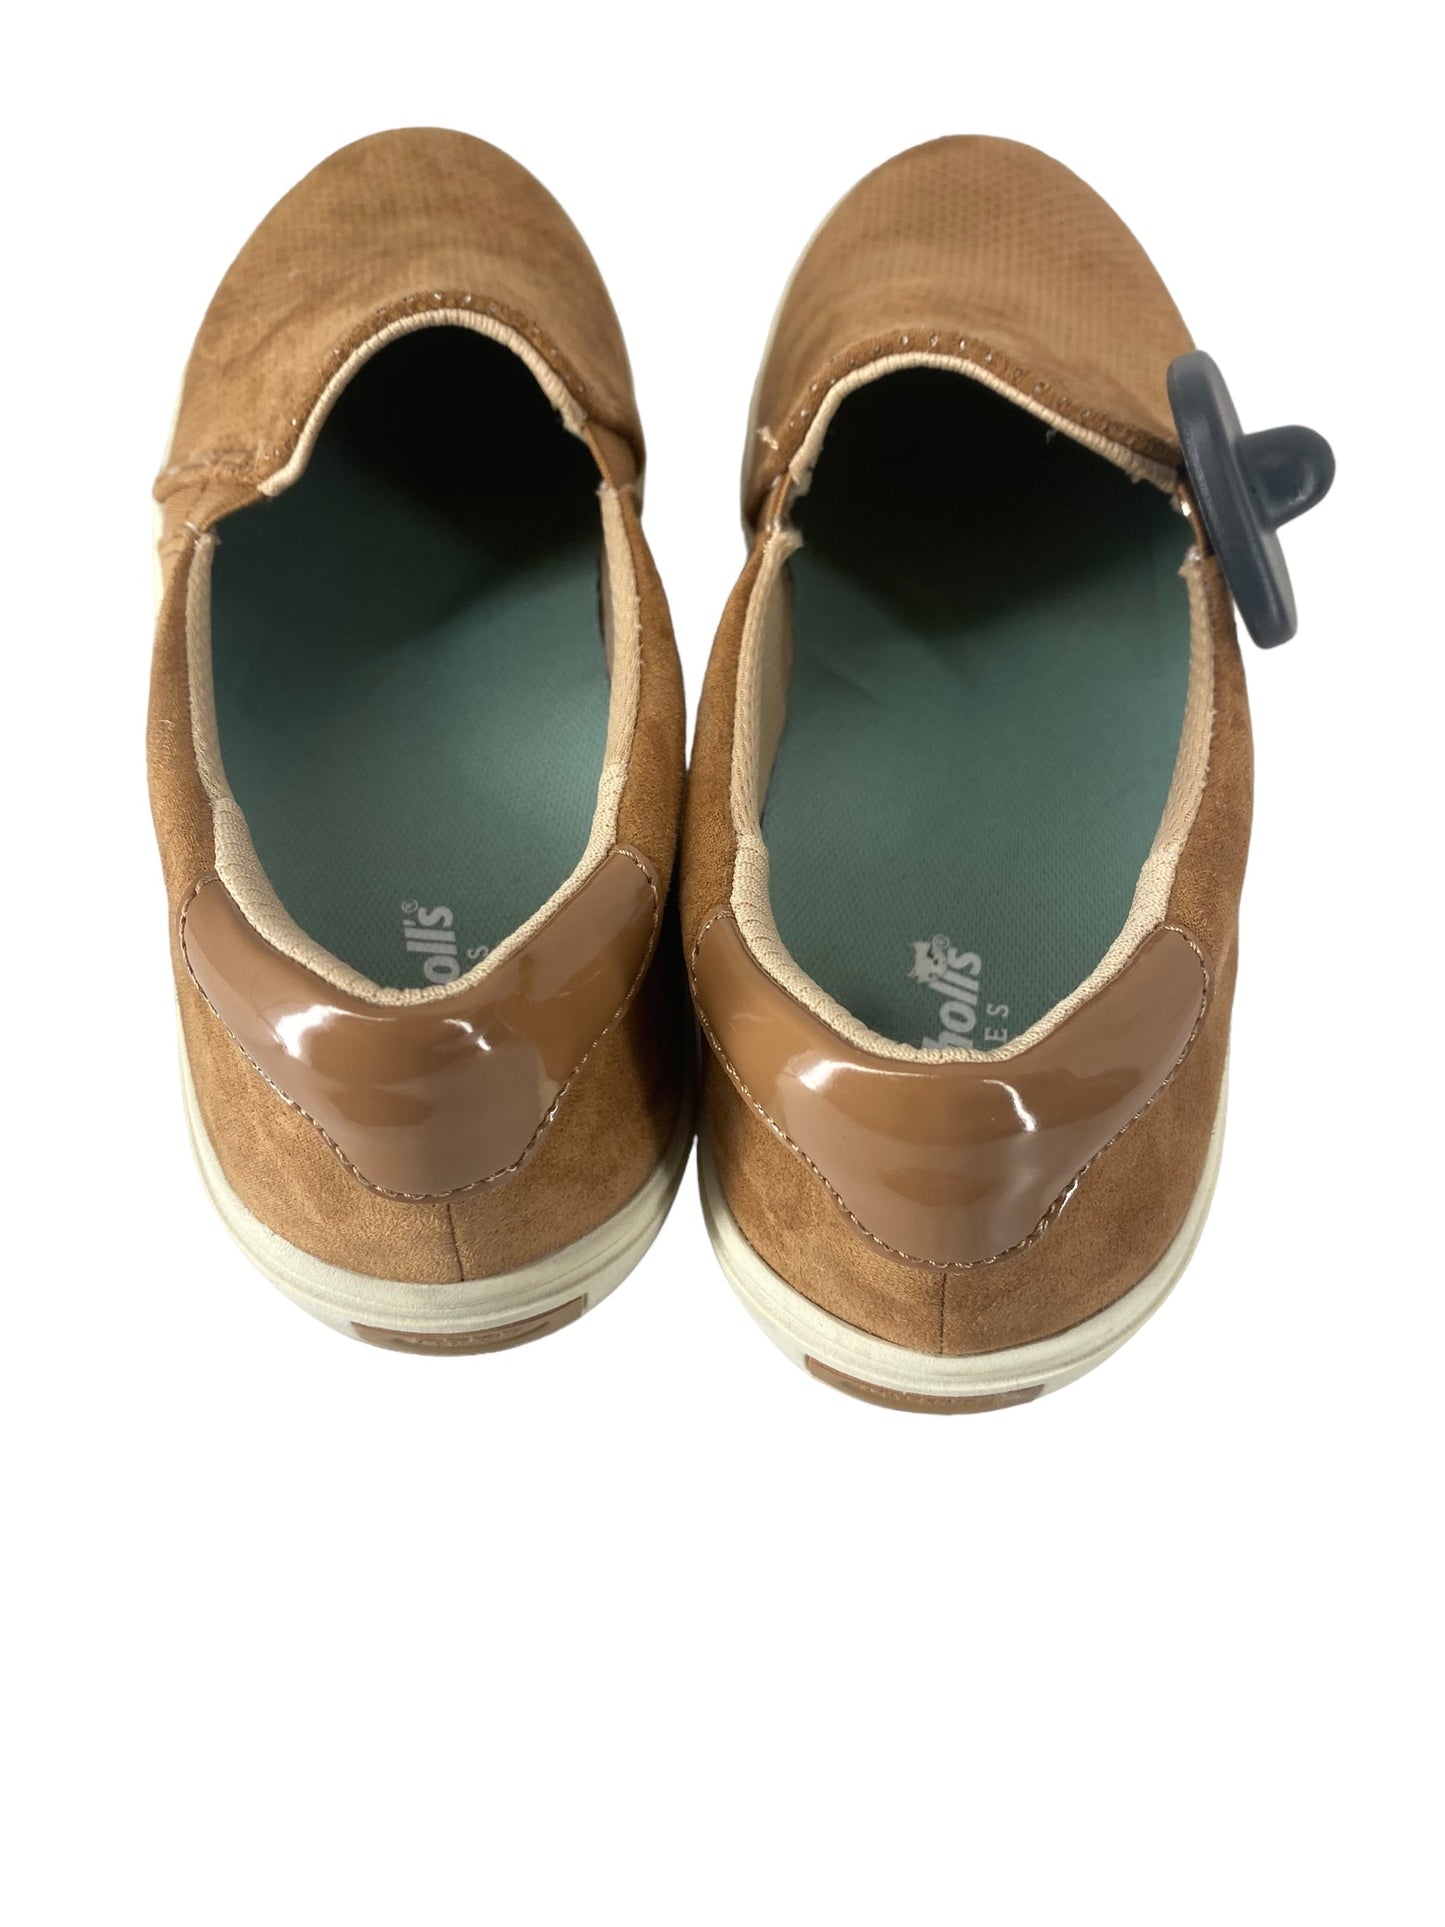 Brown Shoes Flats Dr Scholls, Size 8